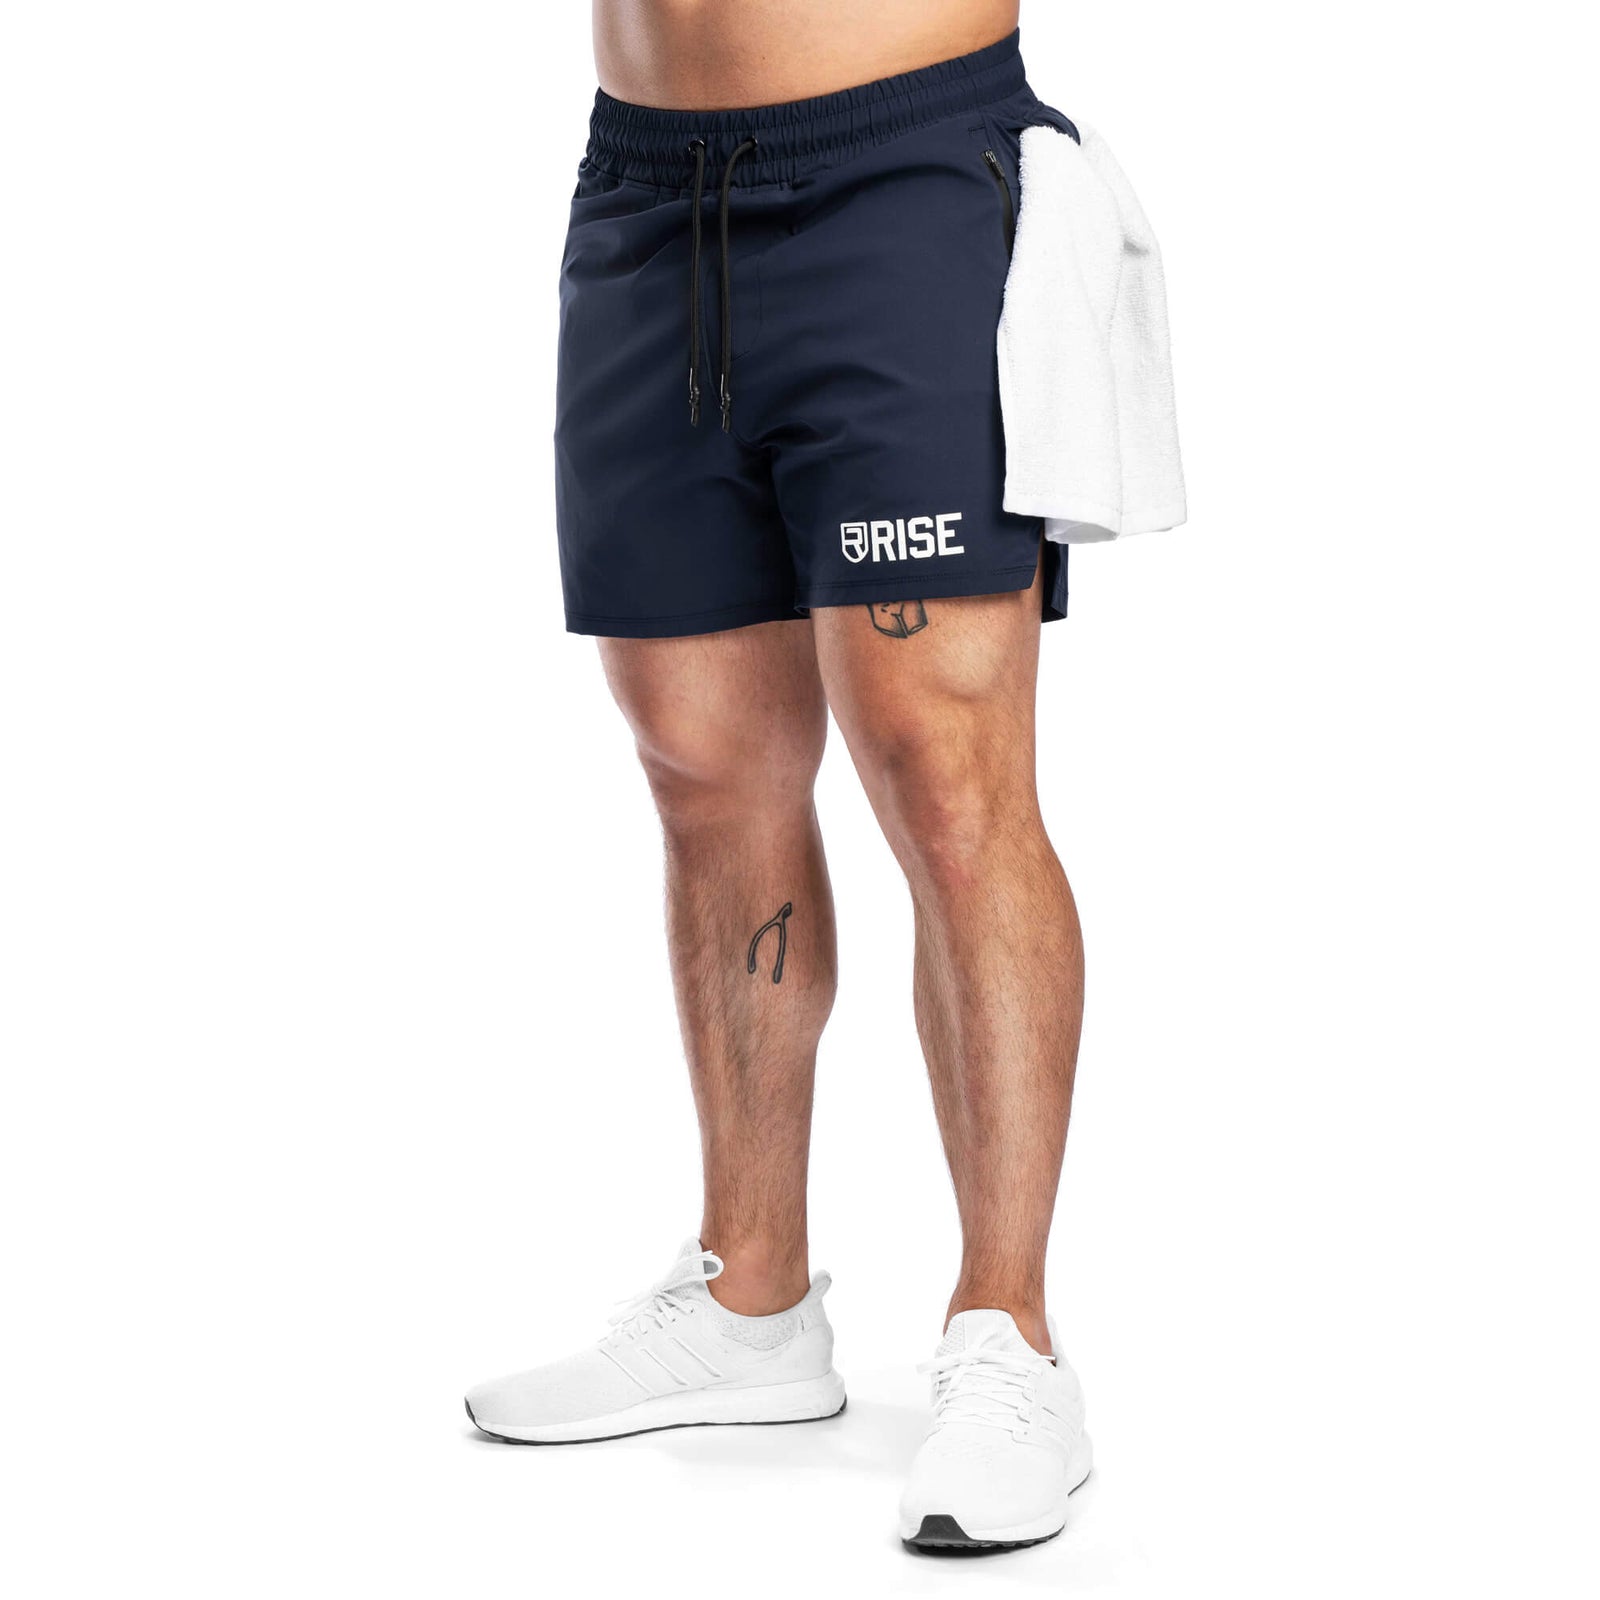 Buy online comfortable Men's Shorts